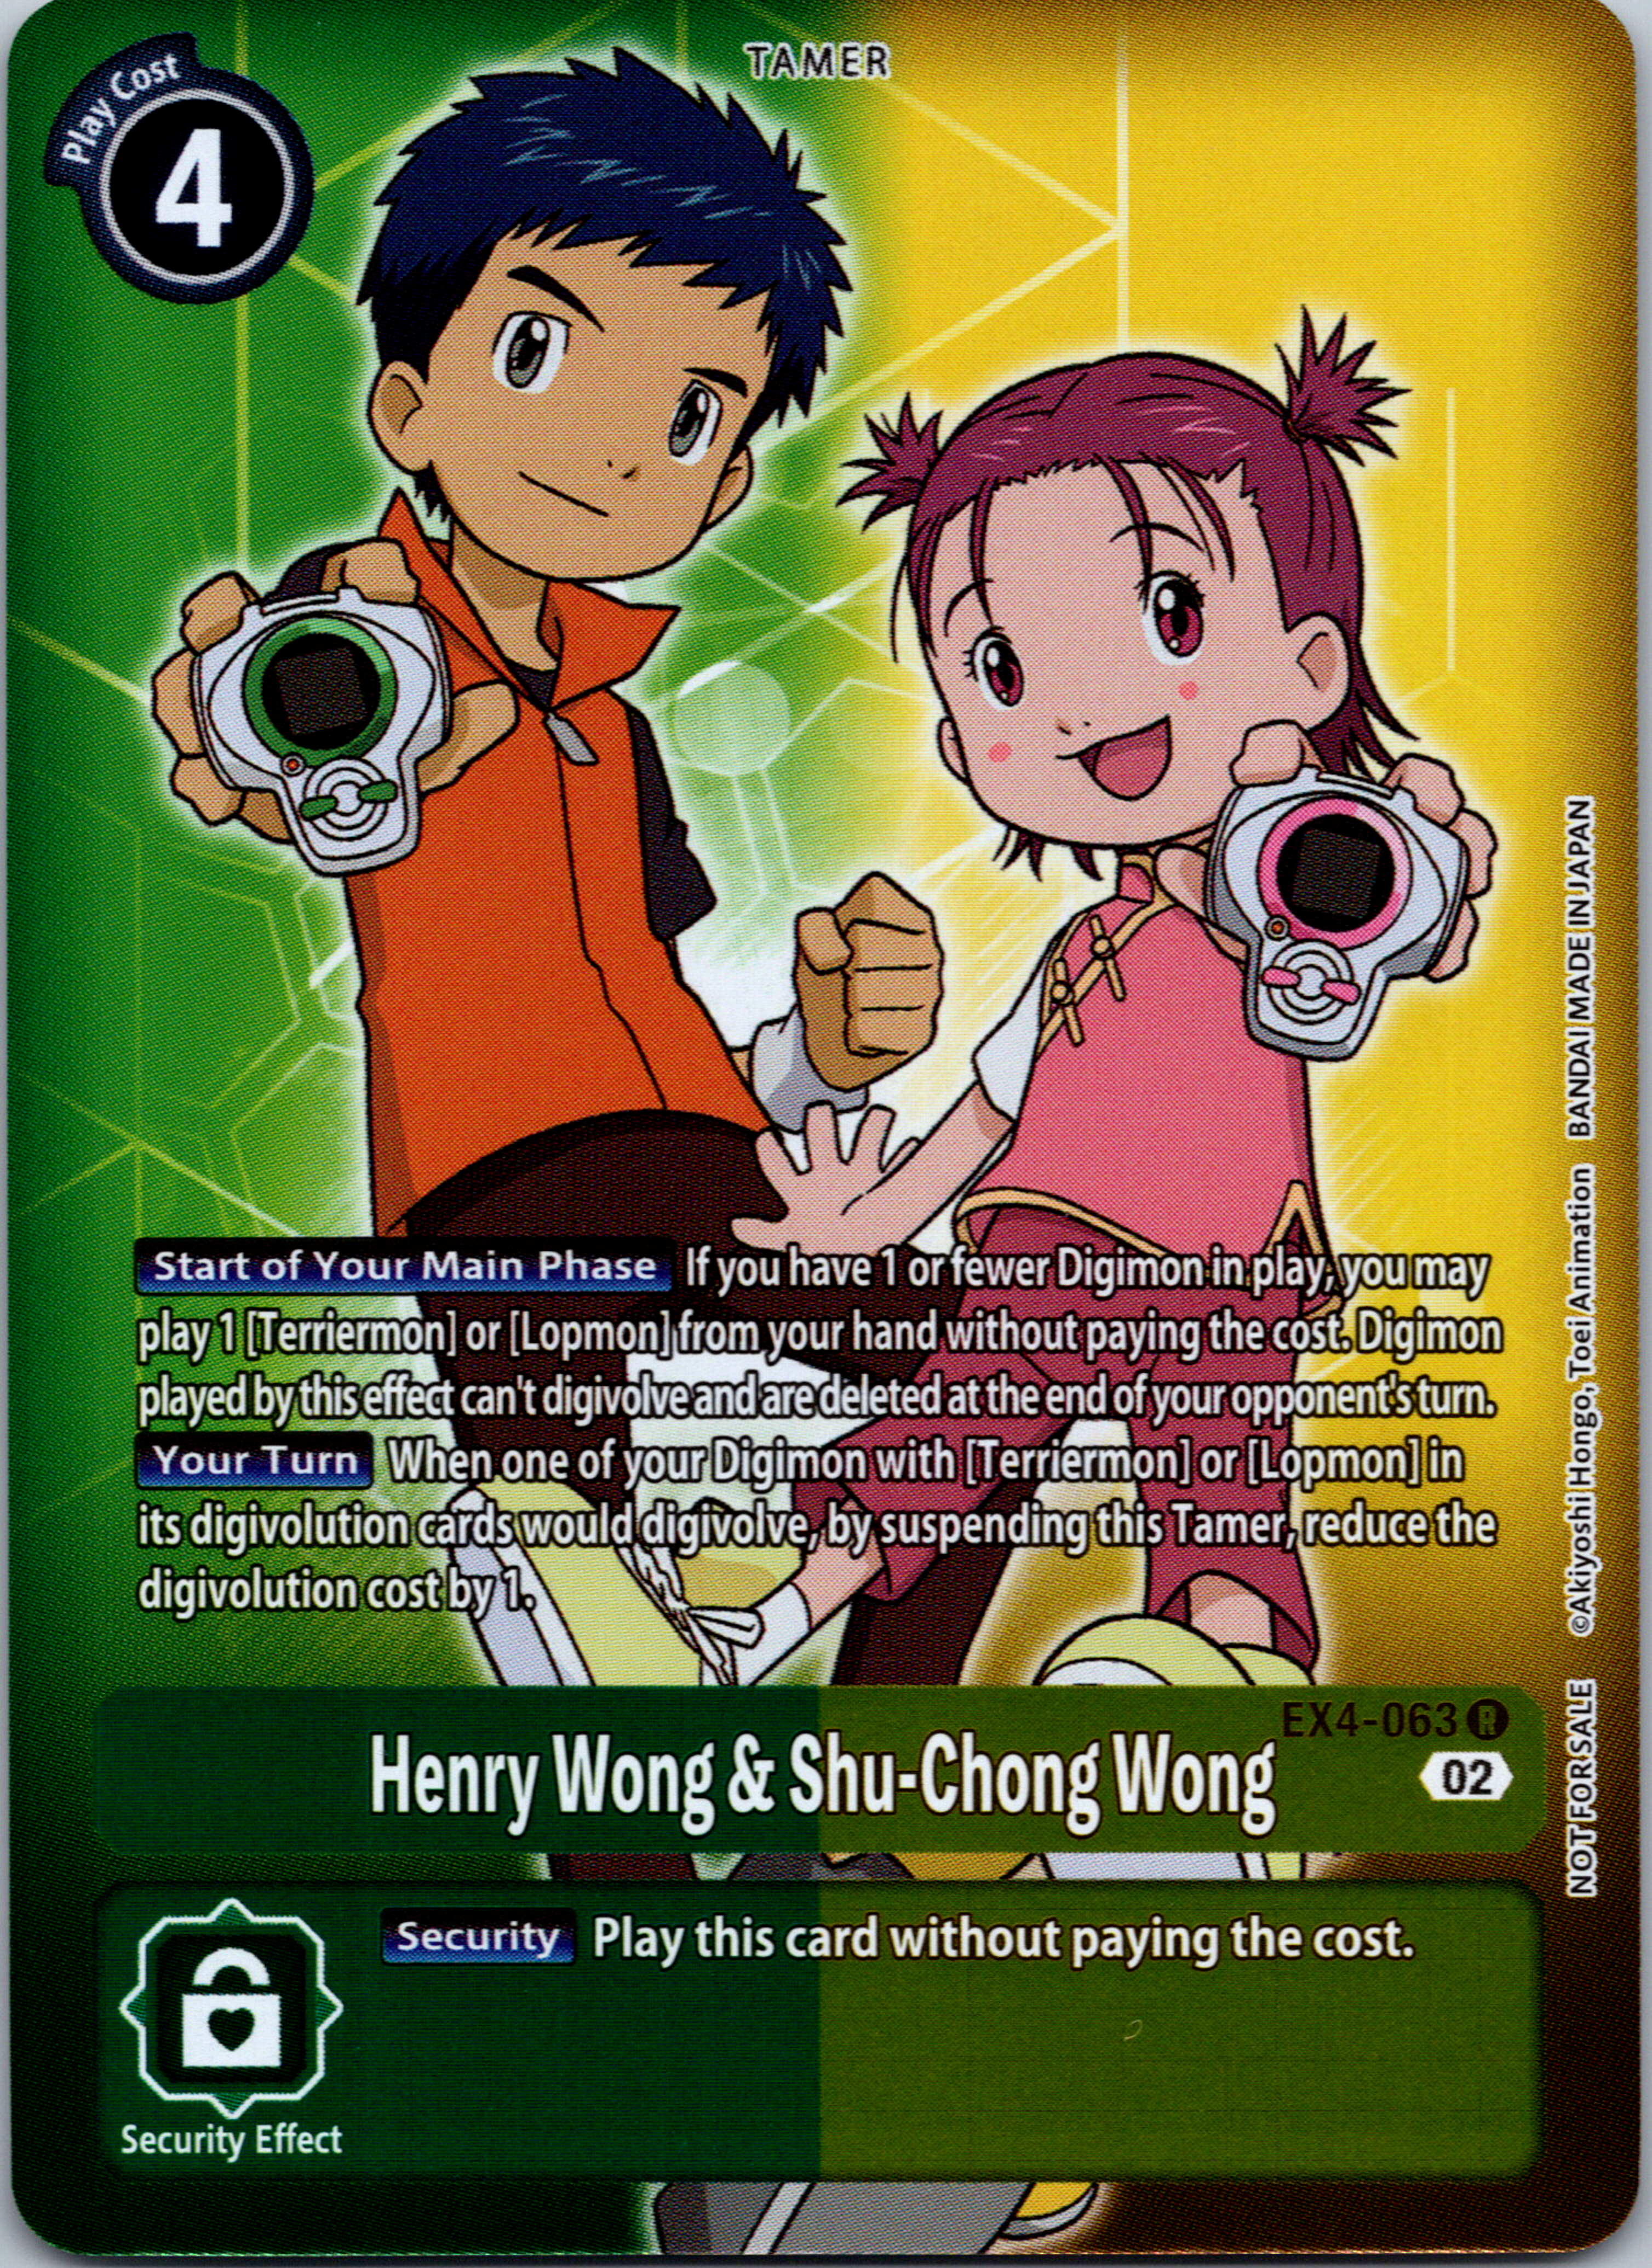 Henry Wong & Shu-Chong Wong (Alternate Art) [EX4-063] [Alternative Being Booster] Foil